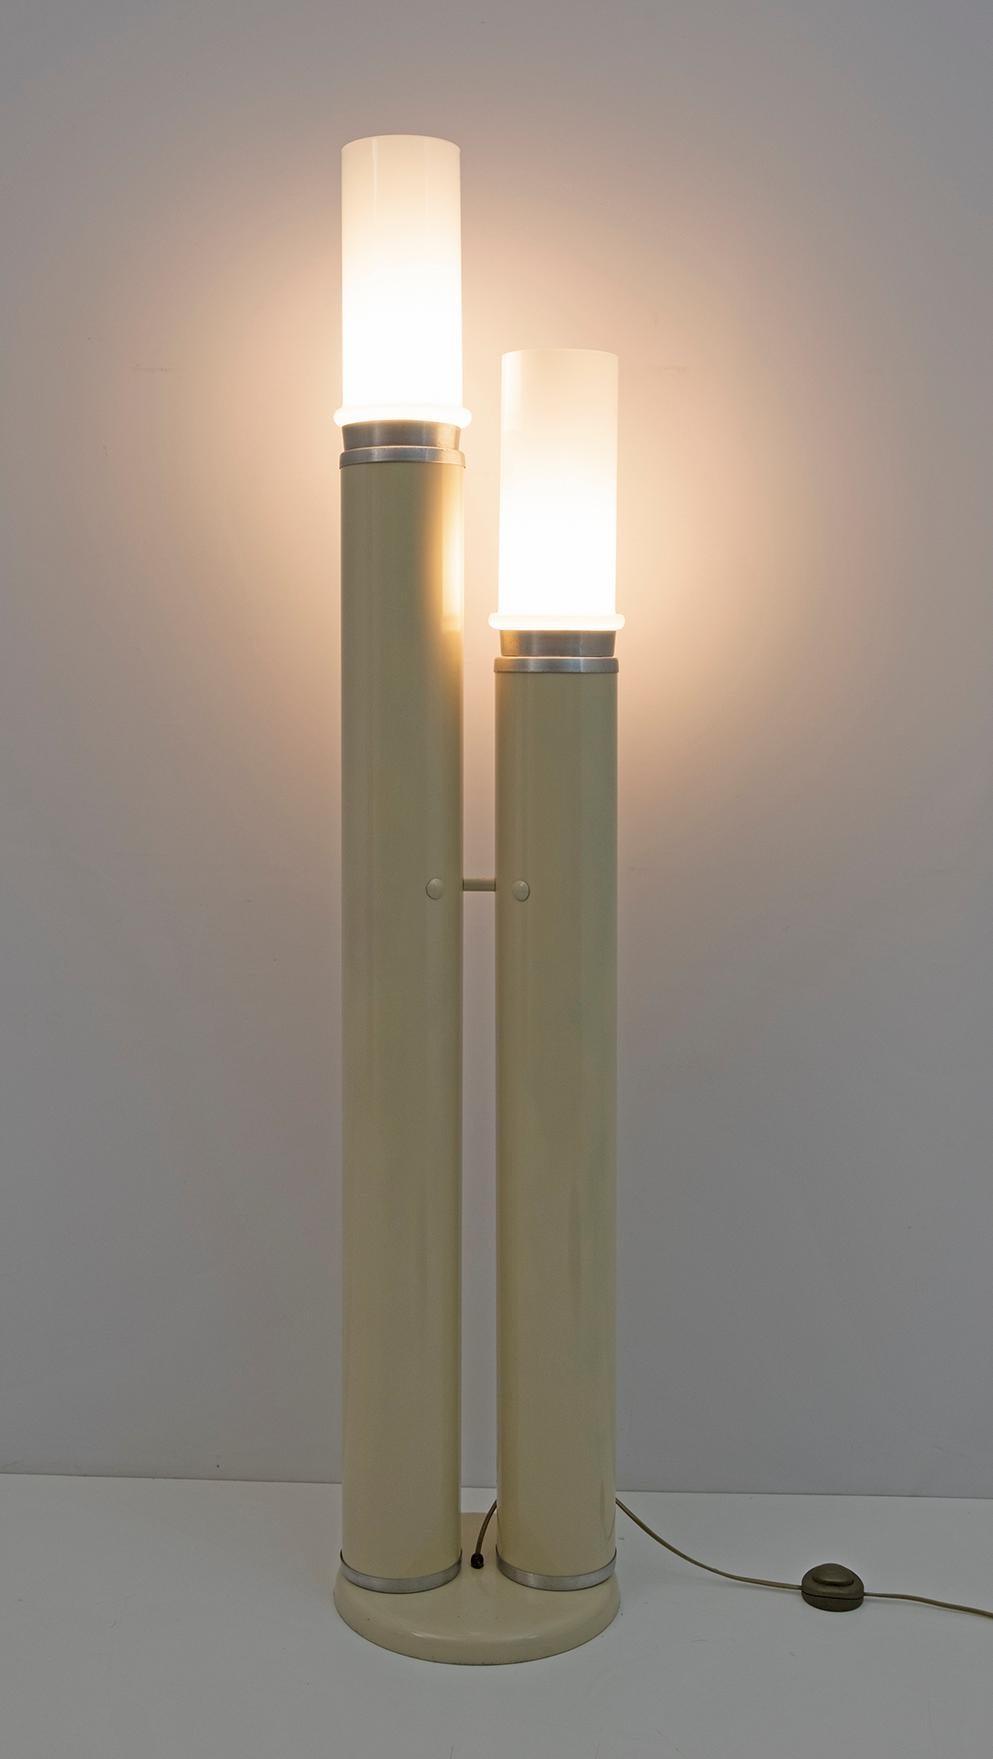 Lampe Space Age, design italien particulier des années 70, composée de deux cylindres en métal laqué ivoire et aluminium et de deux cylindres en verre opale.